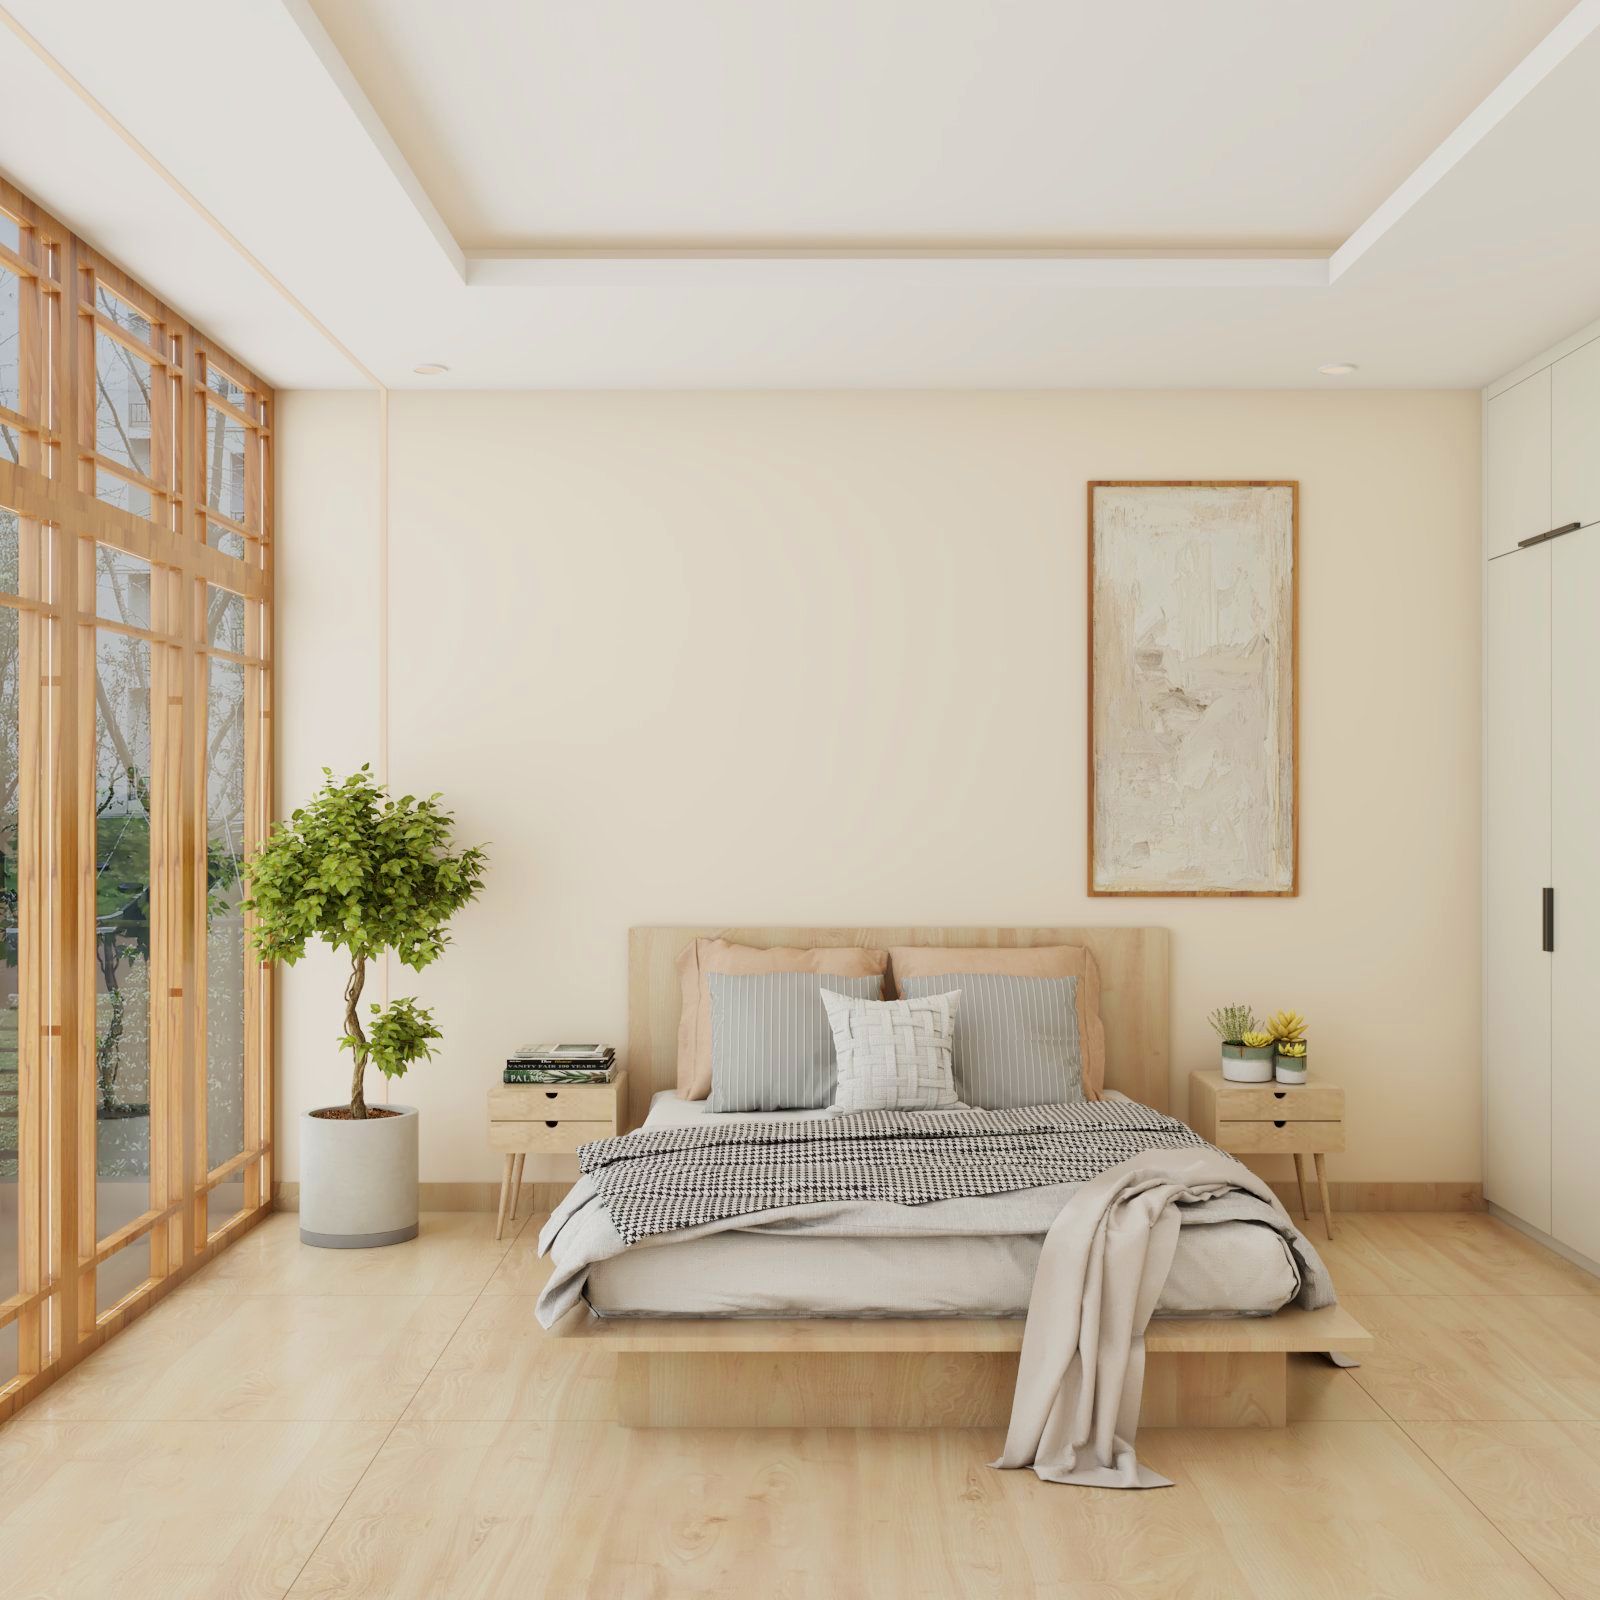 Scandinavian Master Bedroom Design With Wooden Bed And Two-Door White Swing Wardrobe